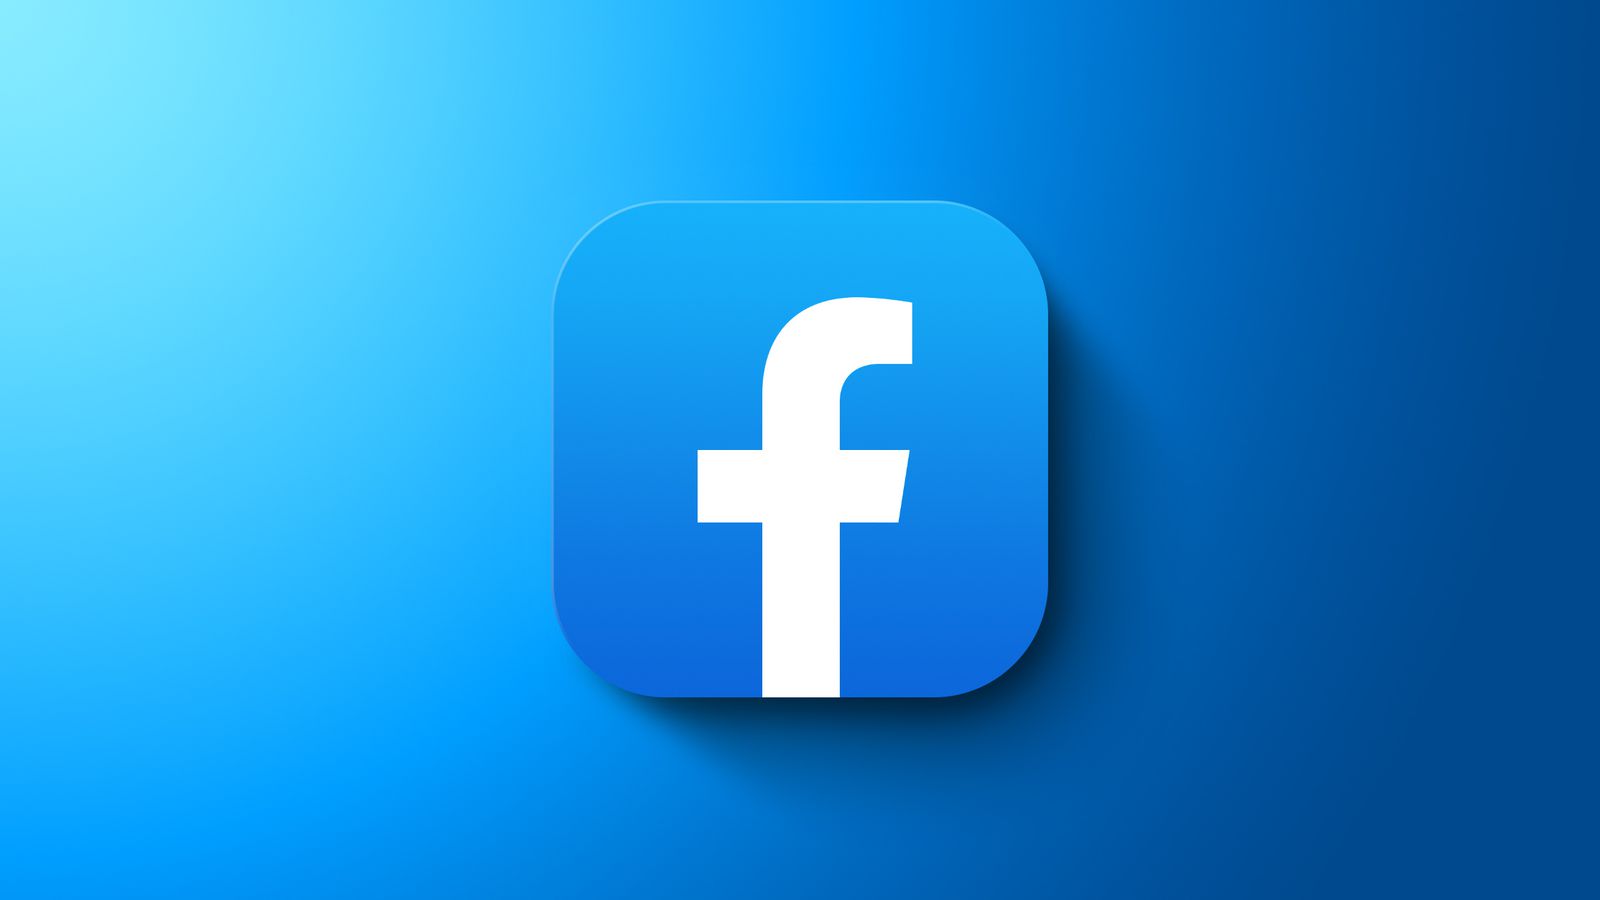 这是一个图标，呈现在蓝色背景上，中间有一个白色的“f”字母，代表一家著名的社交媒体平台。